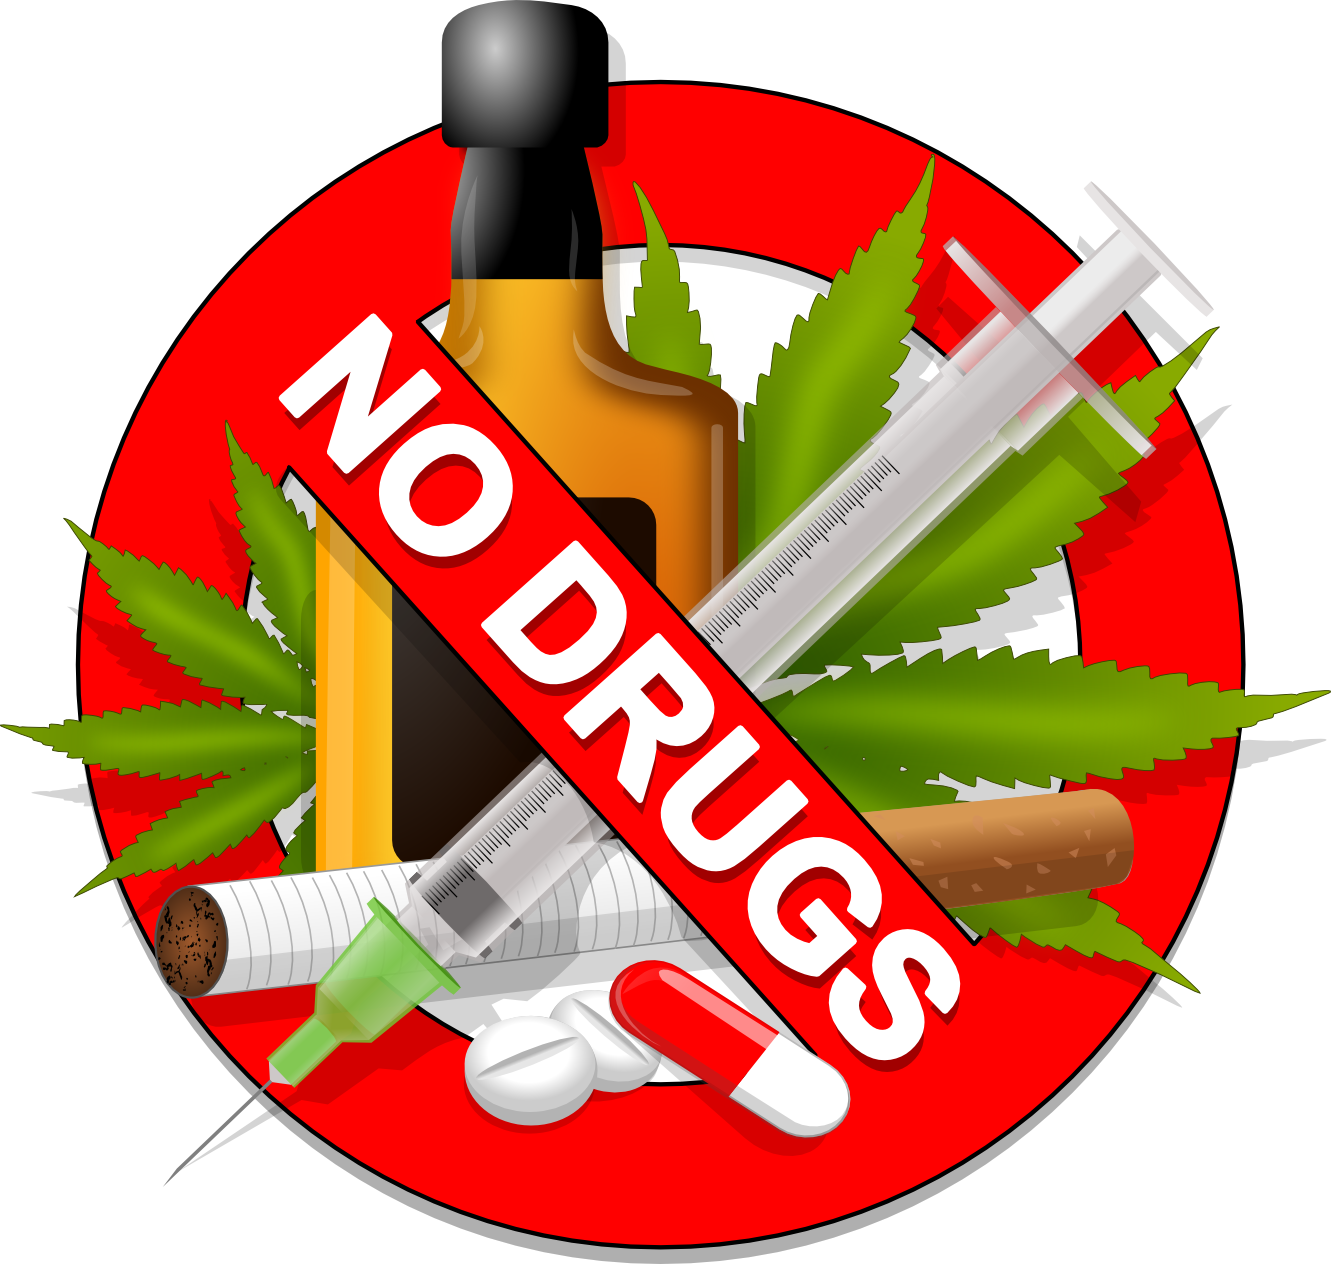 Drug war on drug